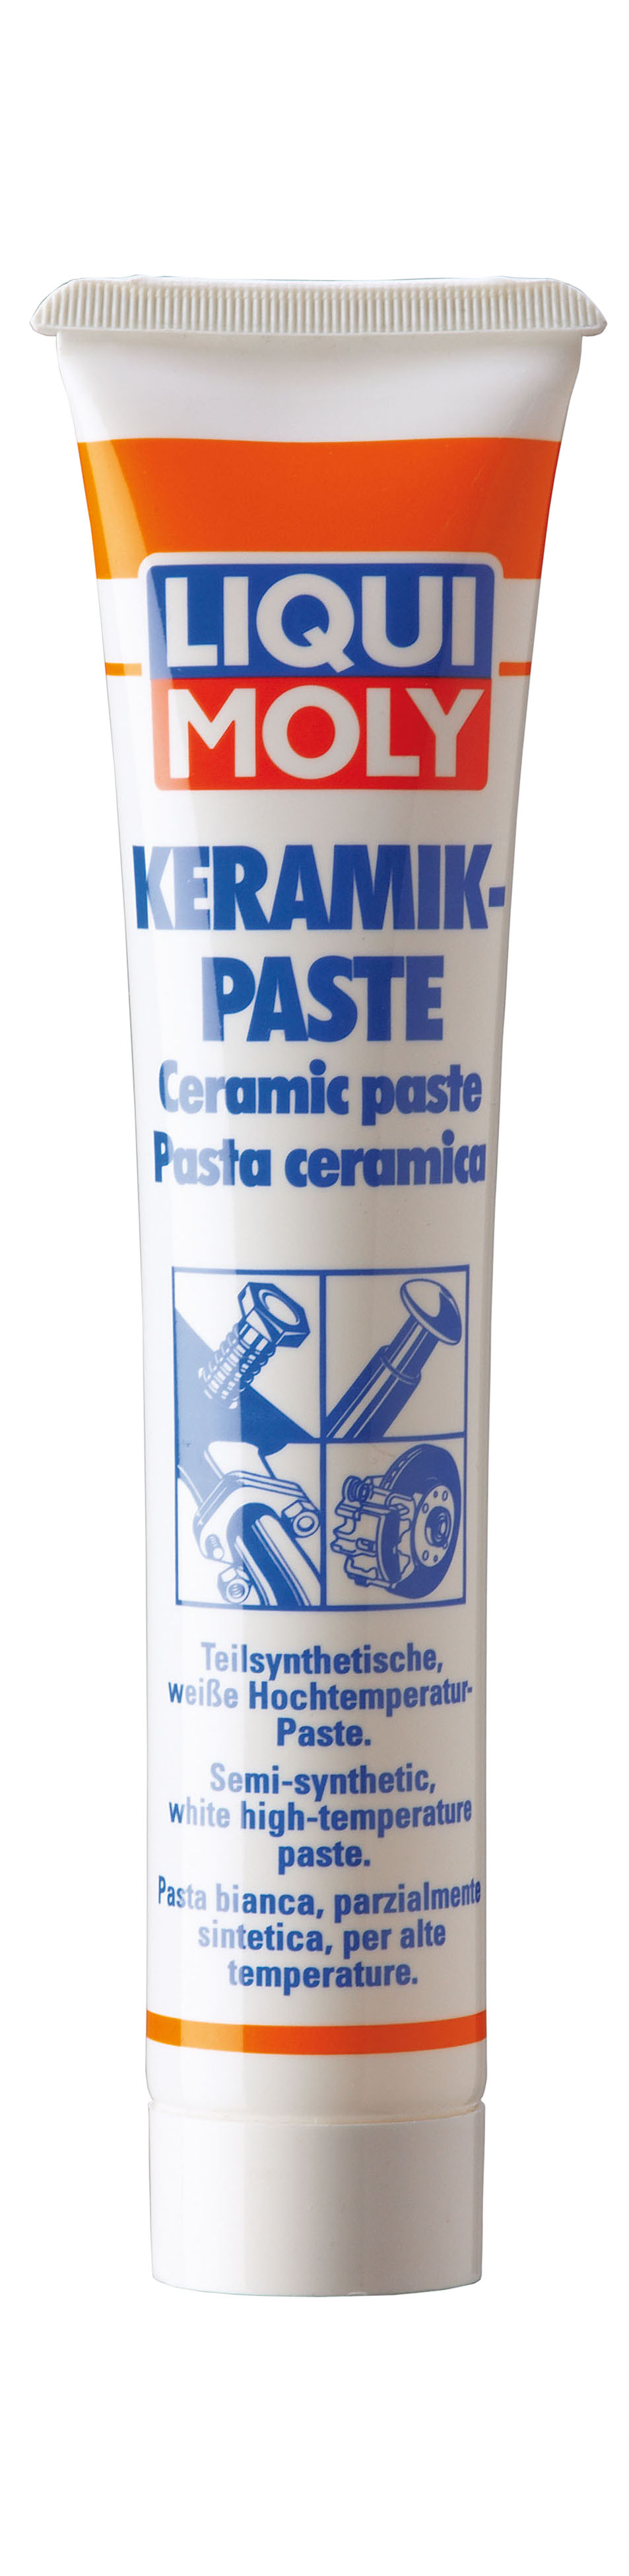 LIQUI MOLY Keramik-Paste Керамическая паста